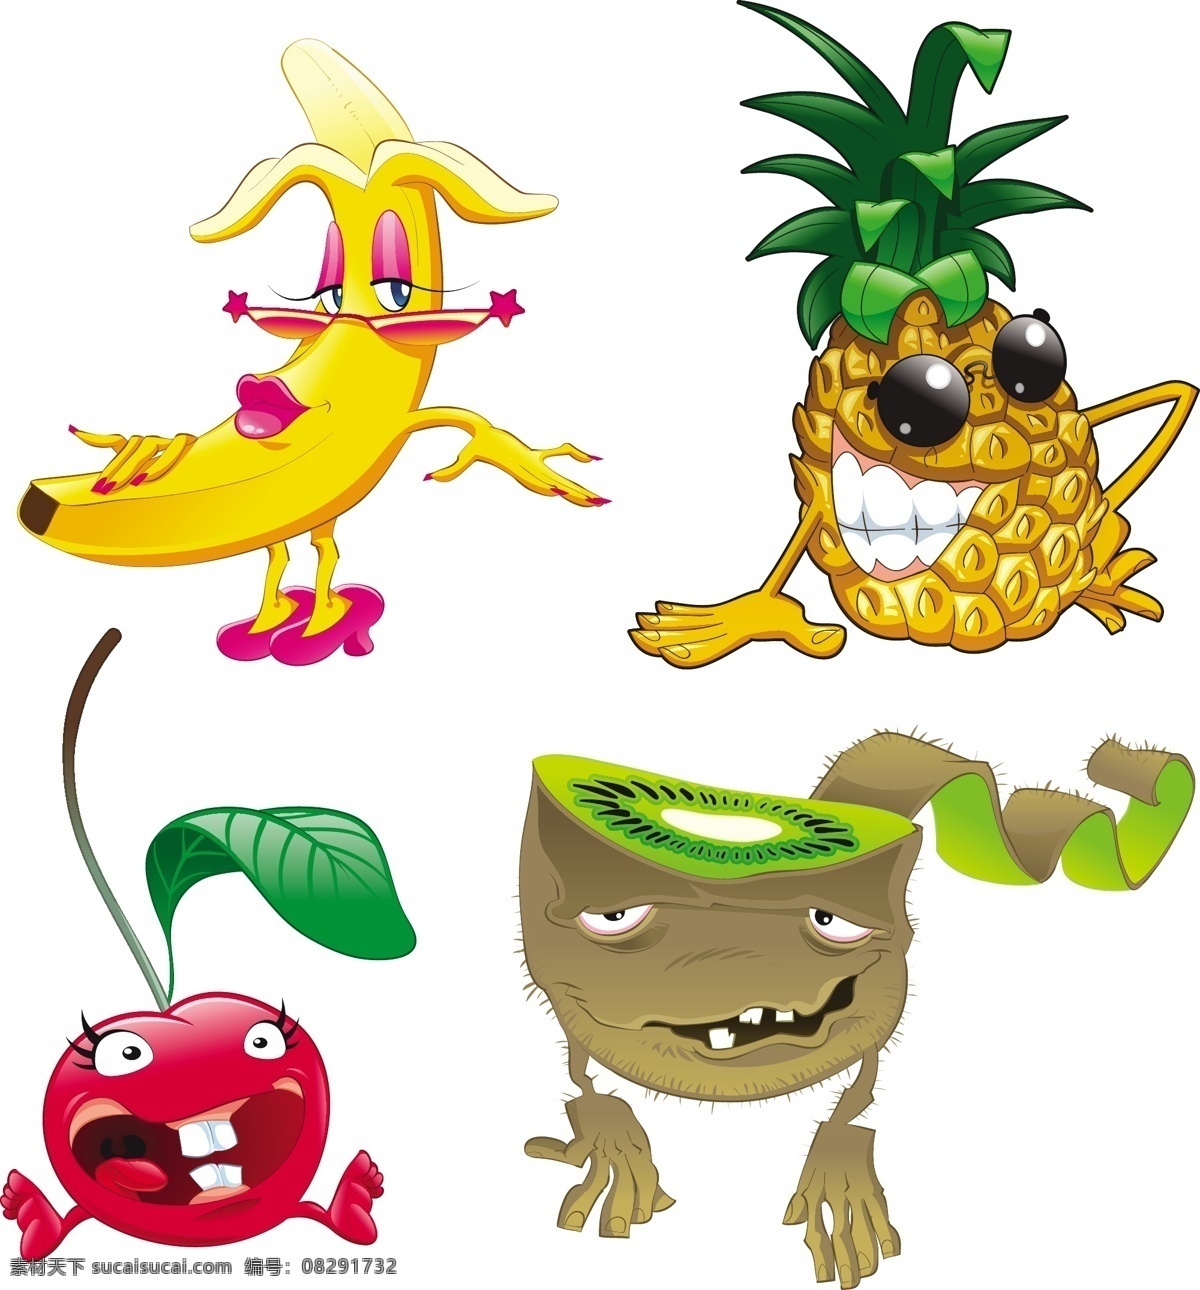 矢量水果卡通 可爱水果 猕猴桃 香蕉 菠萝 樱桃 矢量水果表情 搞笑水果 水果动作 卡通水果 零售素材